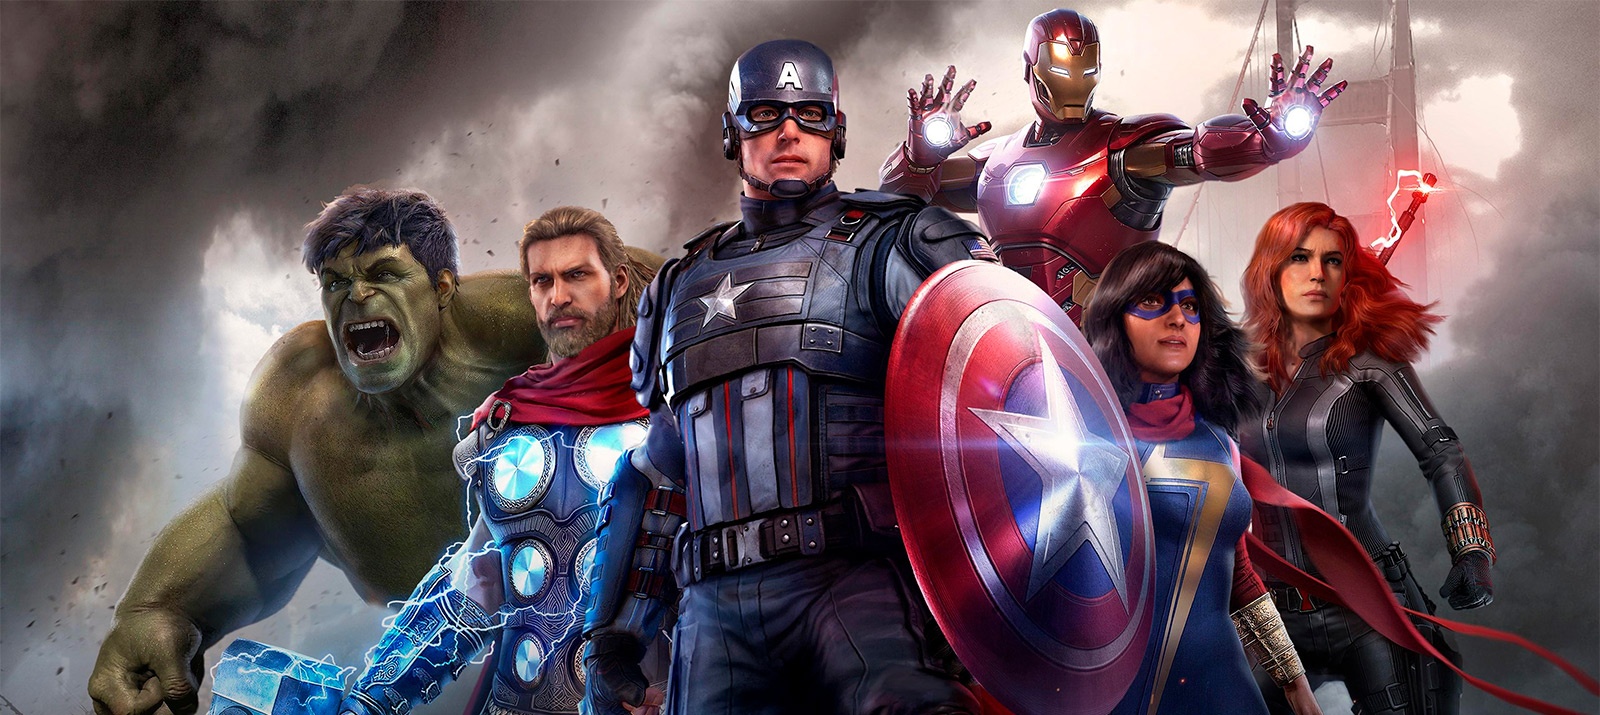 ʻO wai ka mea makemake ʻole e komo i ka Avengers? ʻO ka loiloi o ka pāʻani "Marvel's Avengers"